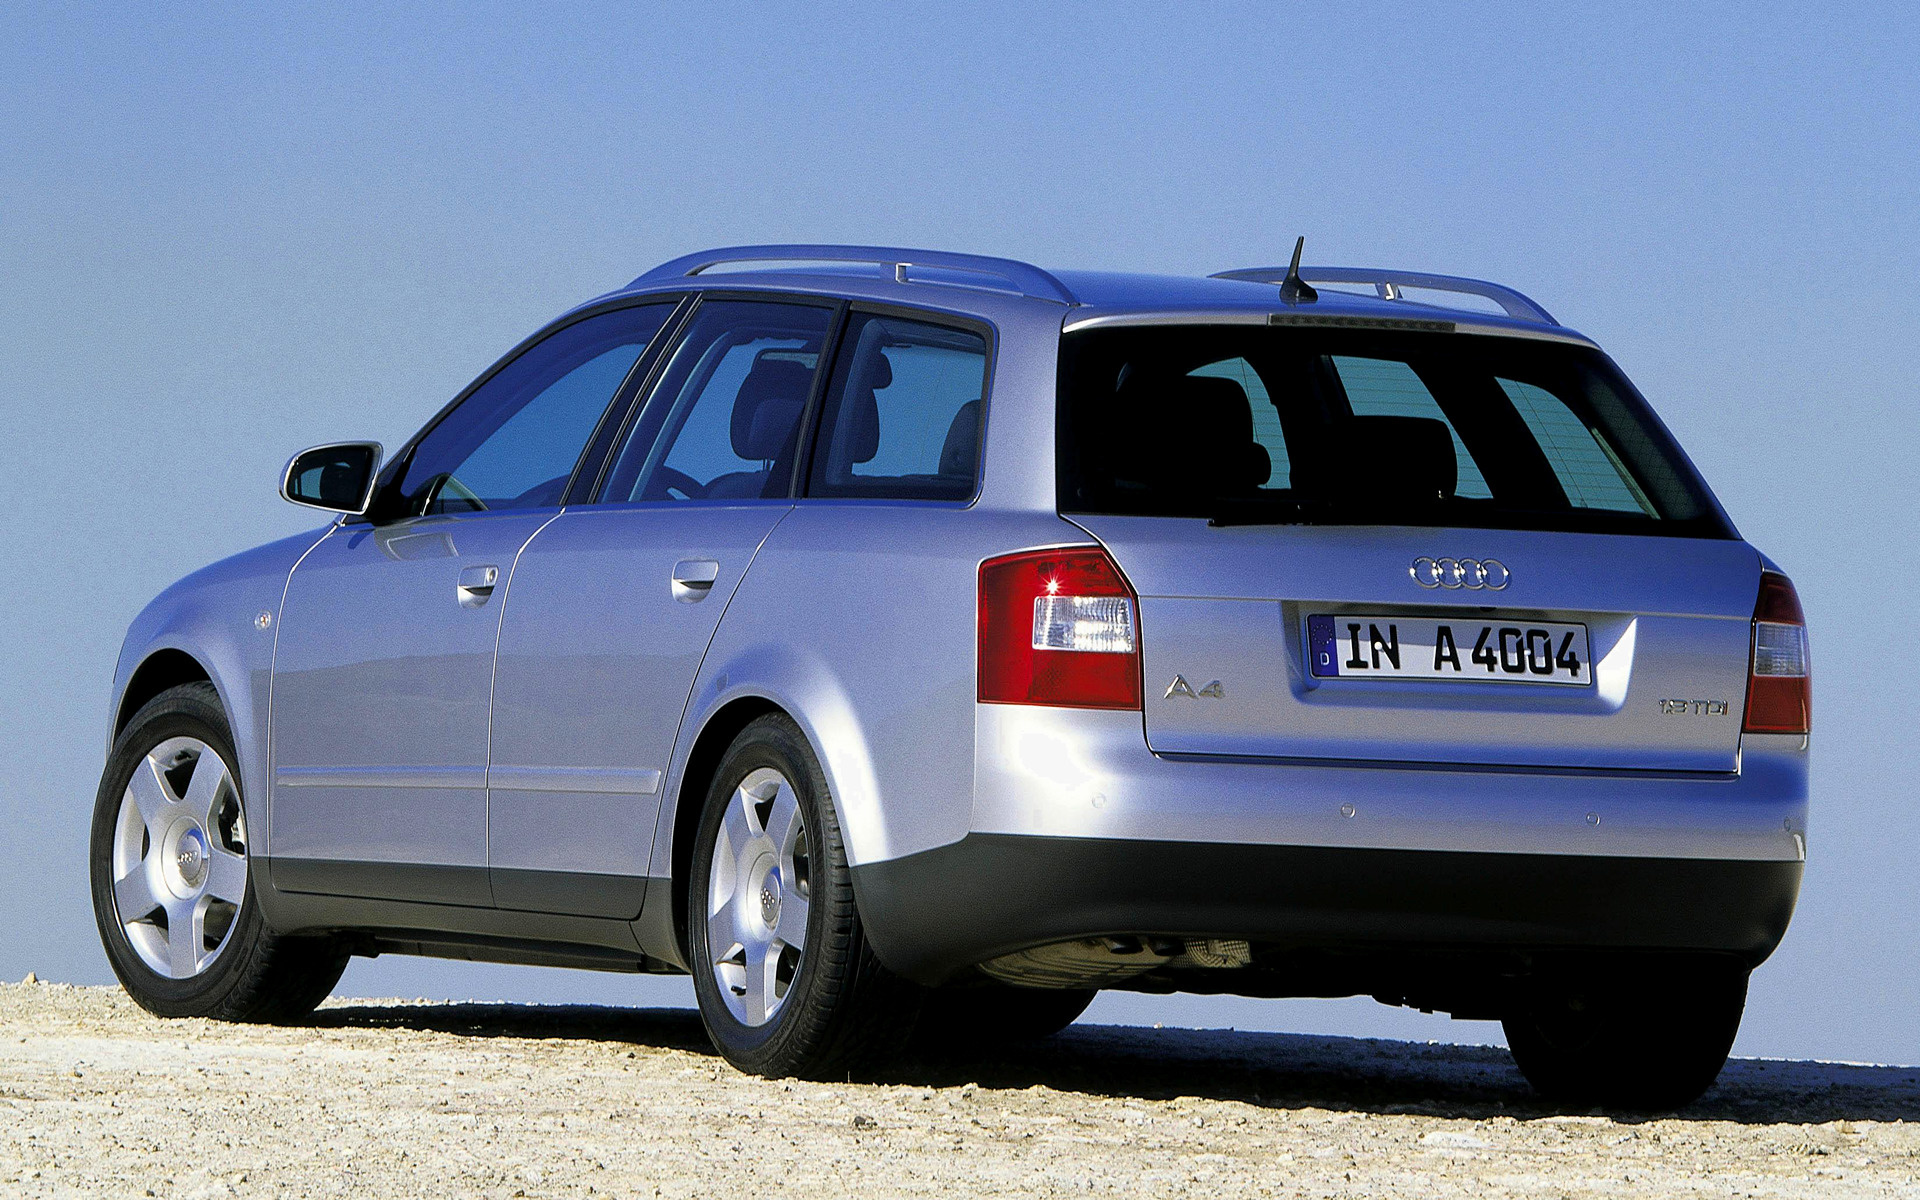 Ауди 4 2001 год. Audi a4 b6 2001. Audi a4 b6 универсал. Audi a4 2001 универсал. Ауди а4 Авант.